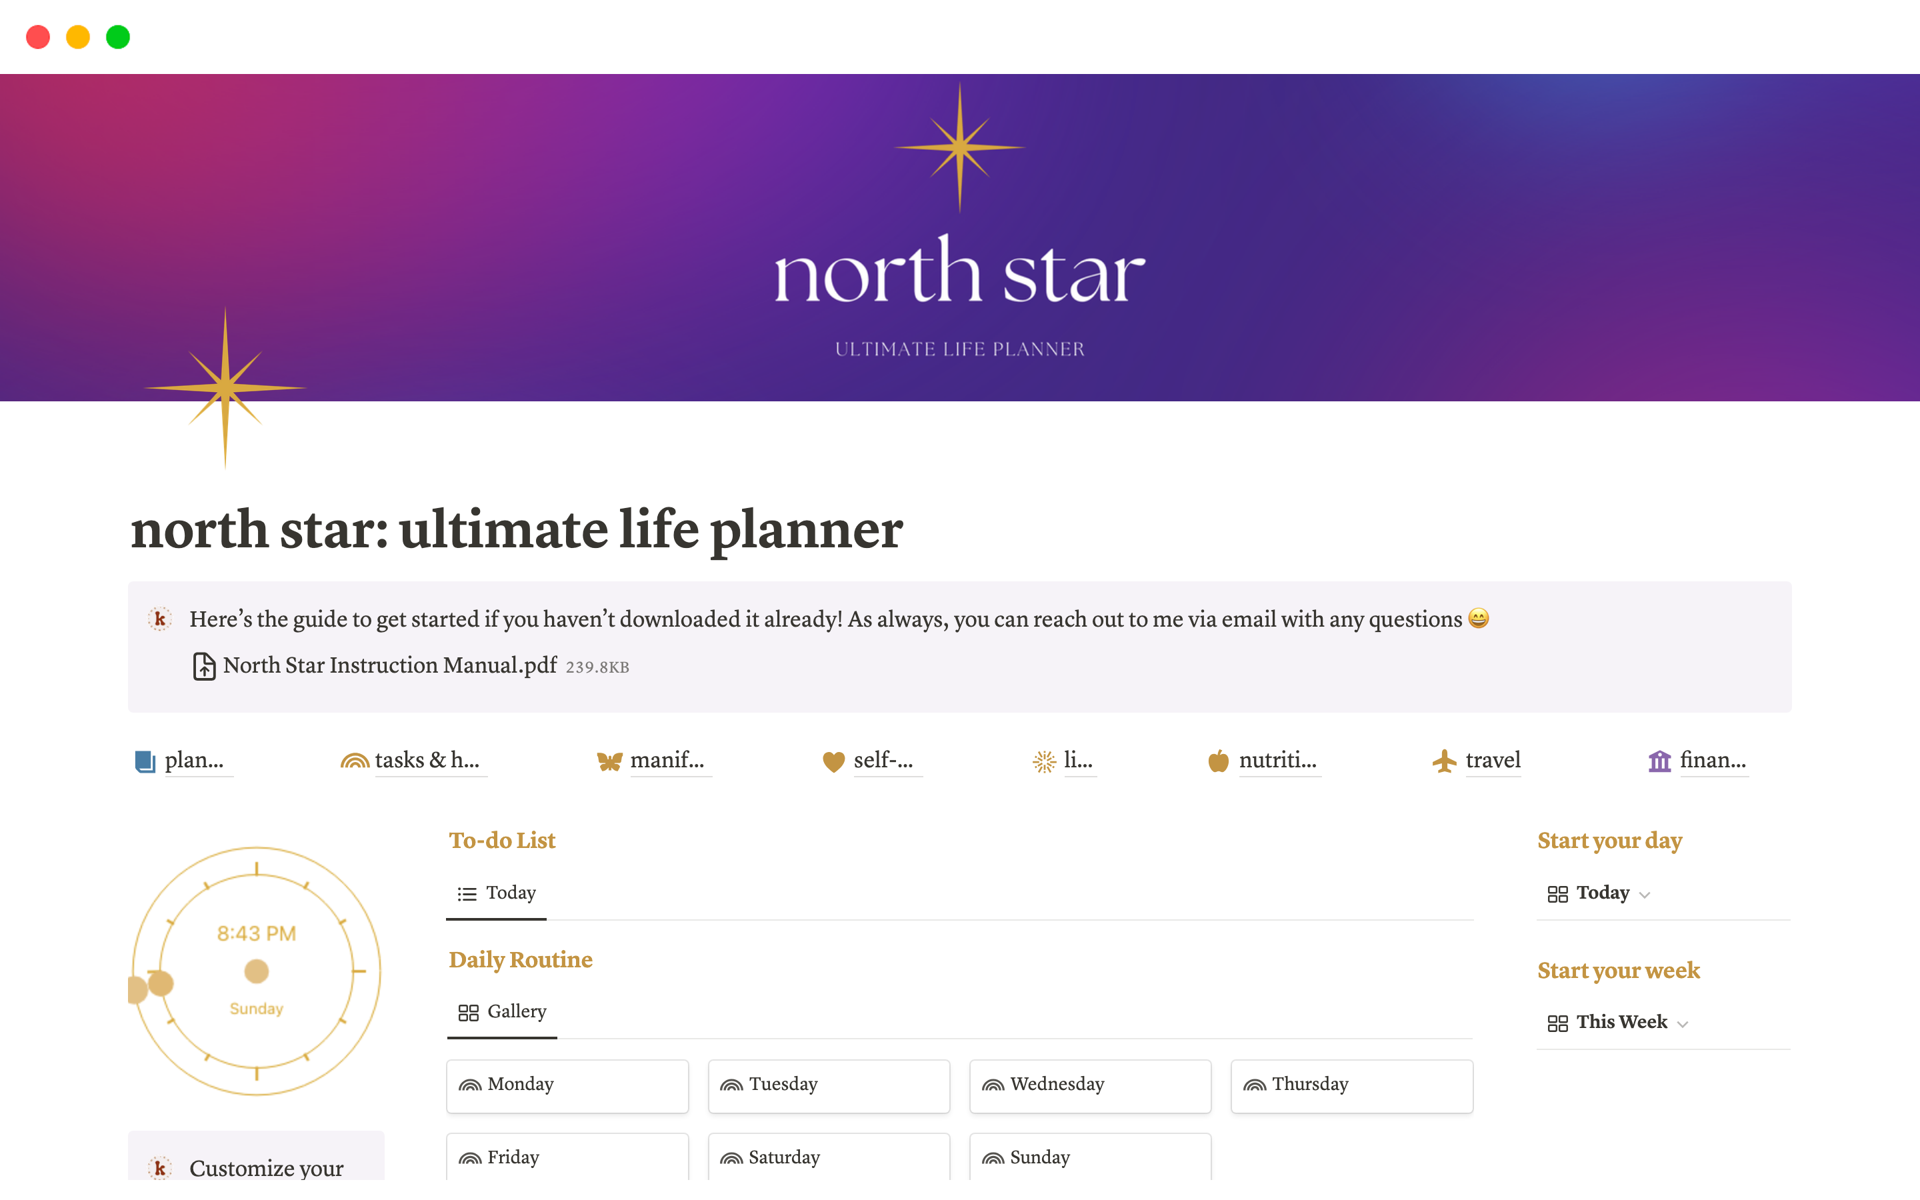 north star: ultimate life planner님의 템플릿 미리보기